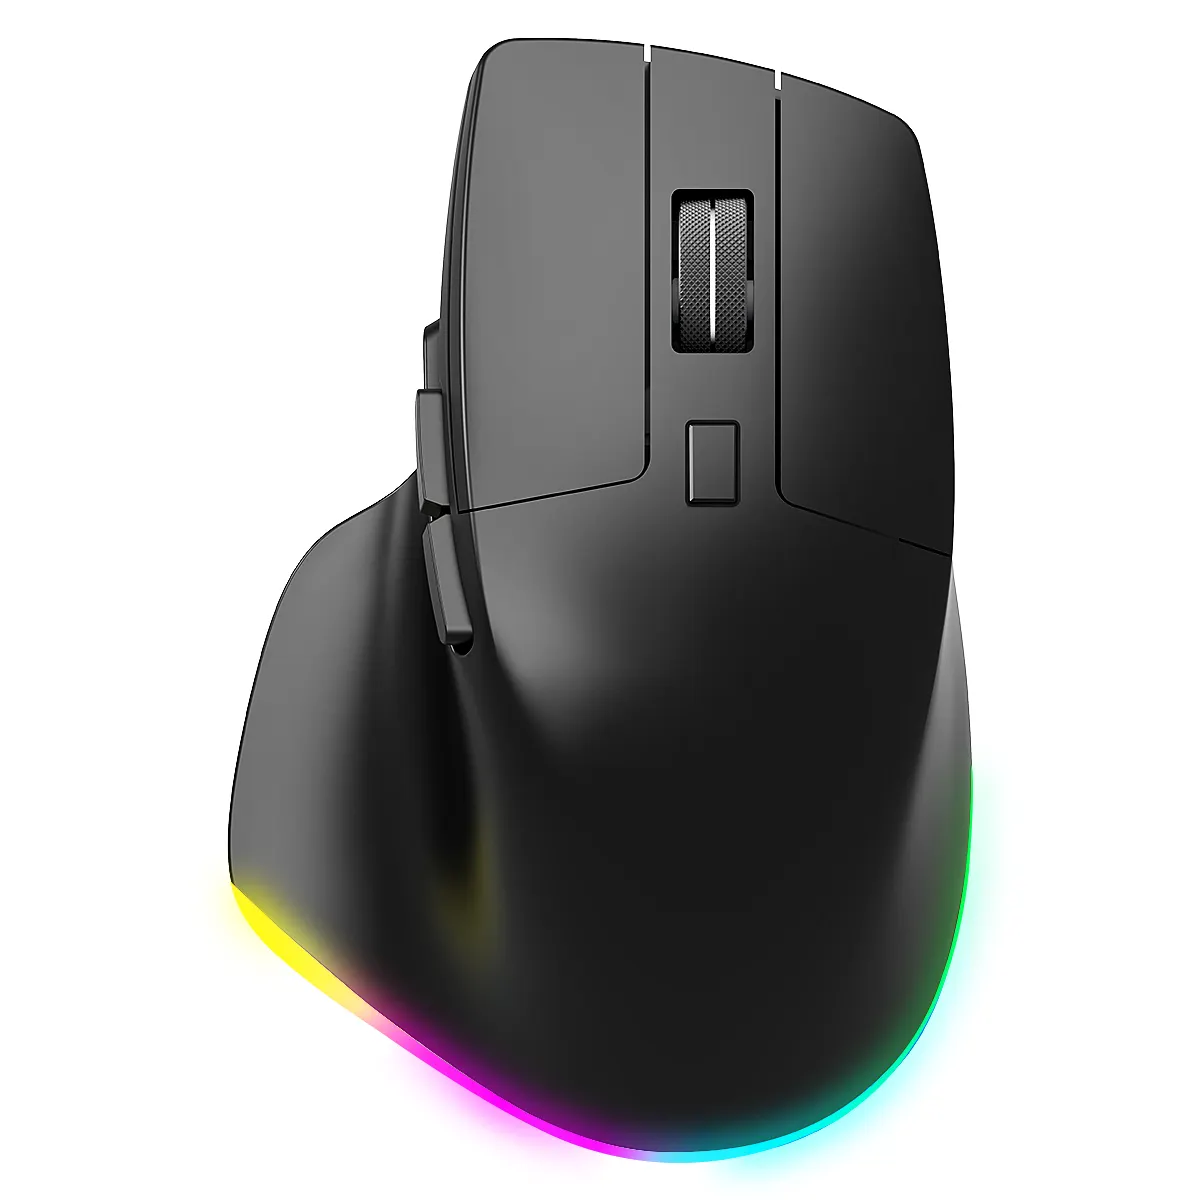 Mouse ergonomico verticale retroilluminato COUSO 6D RGB con ricevitore USB per ufficio Mouse per Computer 2.4G Mouse Wireless Bluetooth ricaricabile